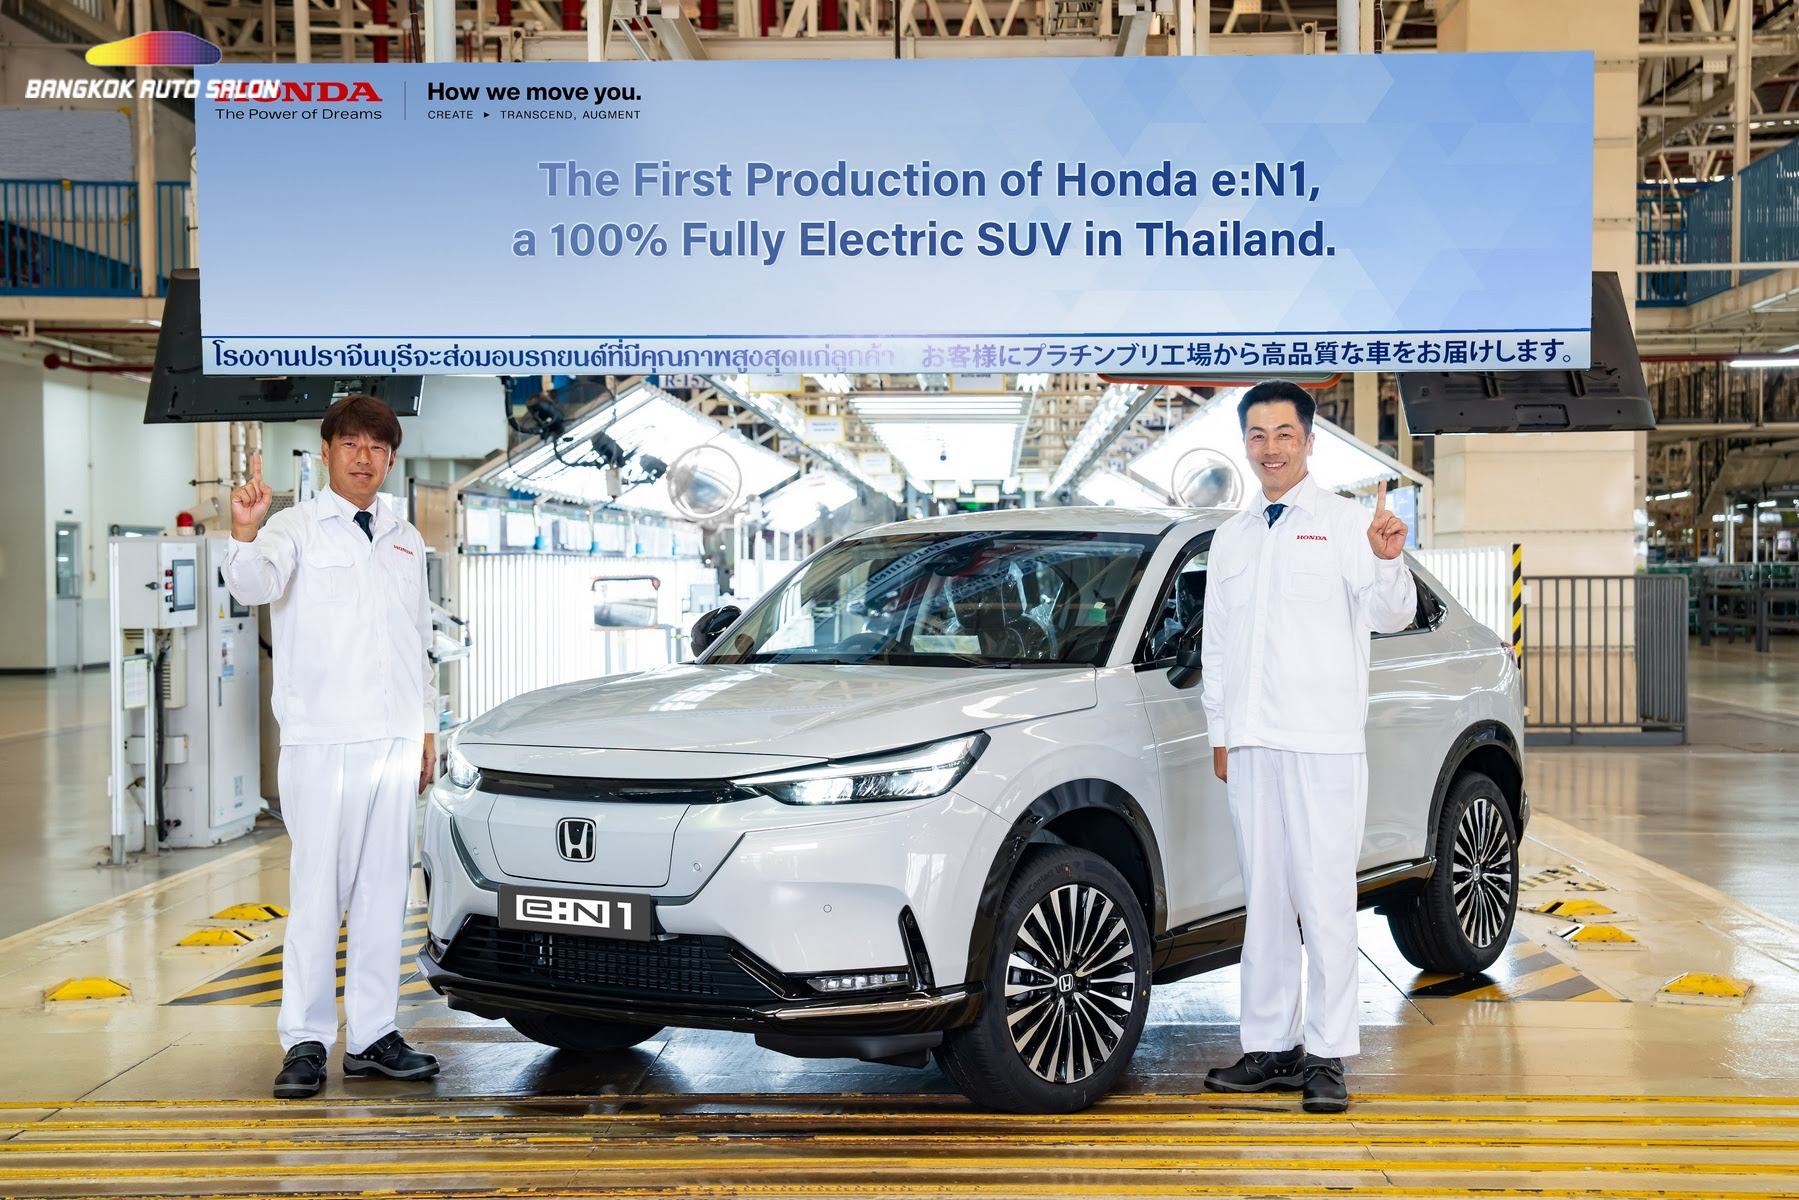 ฮอนด้า เปิดสายการผลิต Honda e:N1 ยนตรกรรมเอสยูวีพลังงานไฟฟ้า 100% แบรนด์แรกในไทย